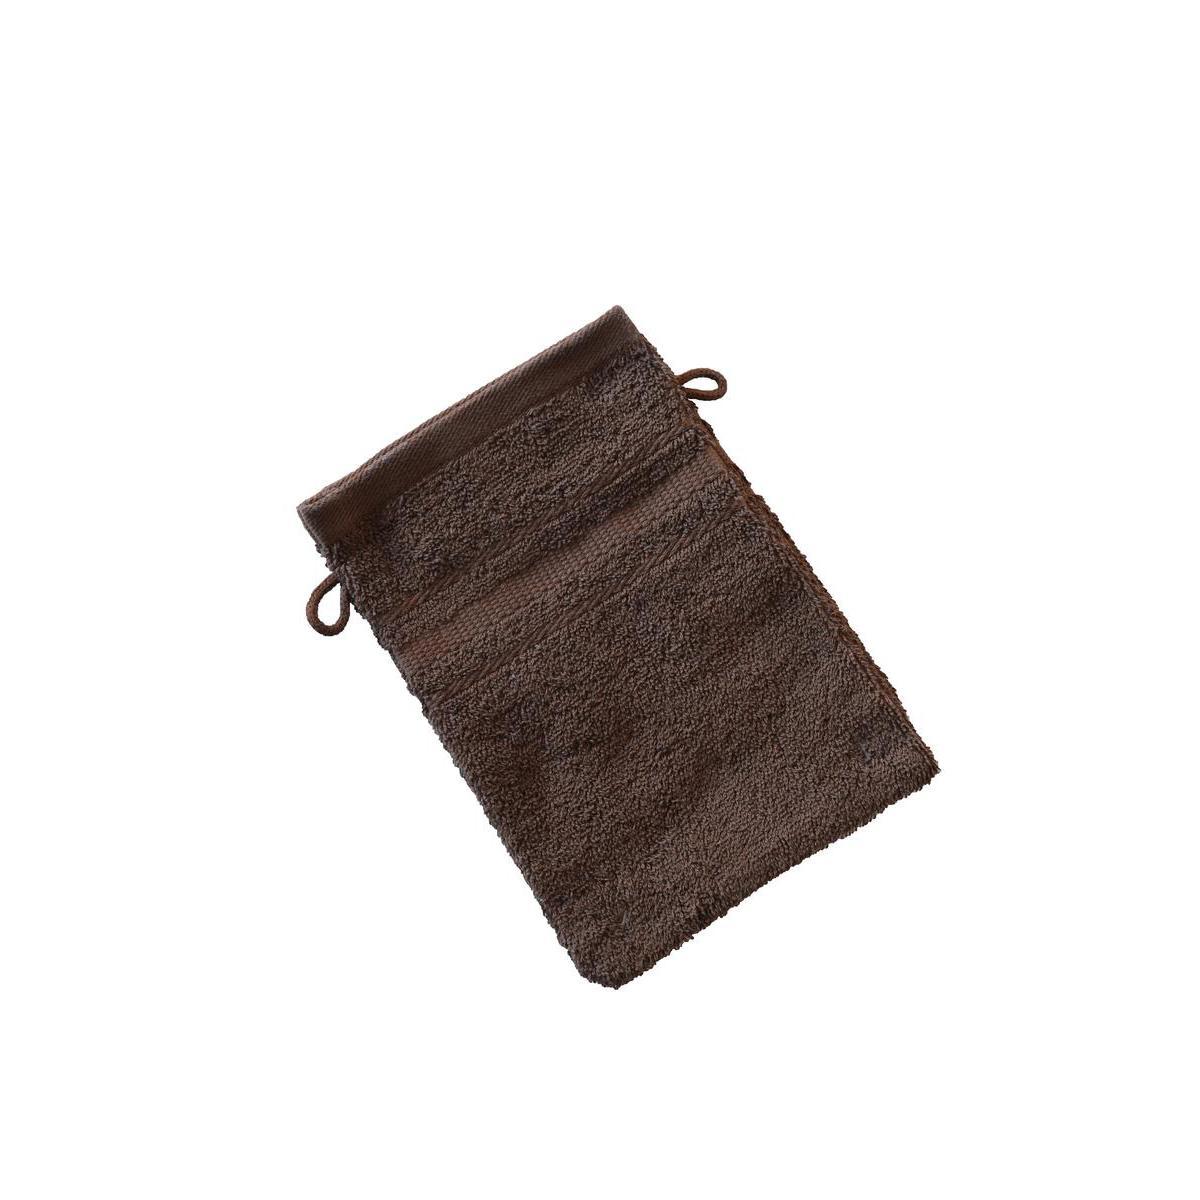 Lot de 2 gants de toilette éponge 100% coton peigné 15 x 21 cm - marron chocolat